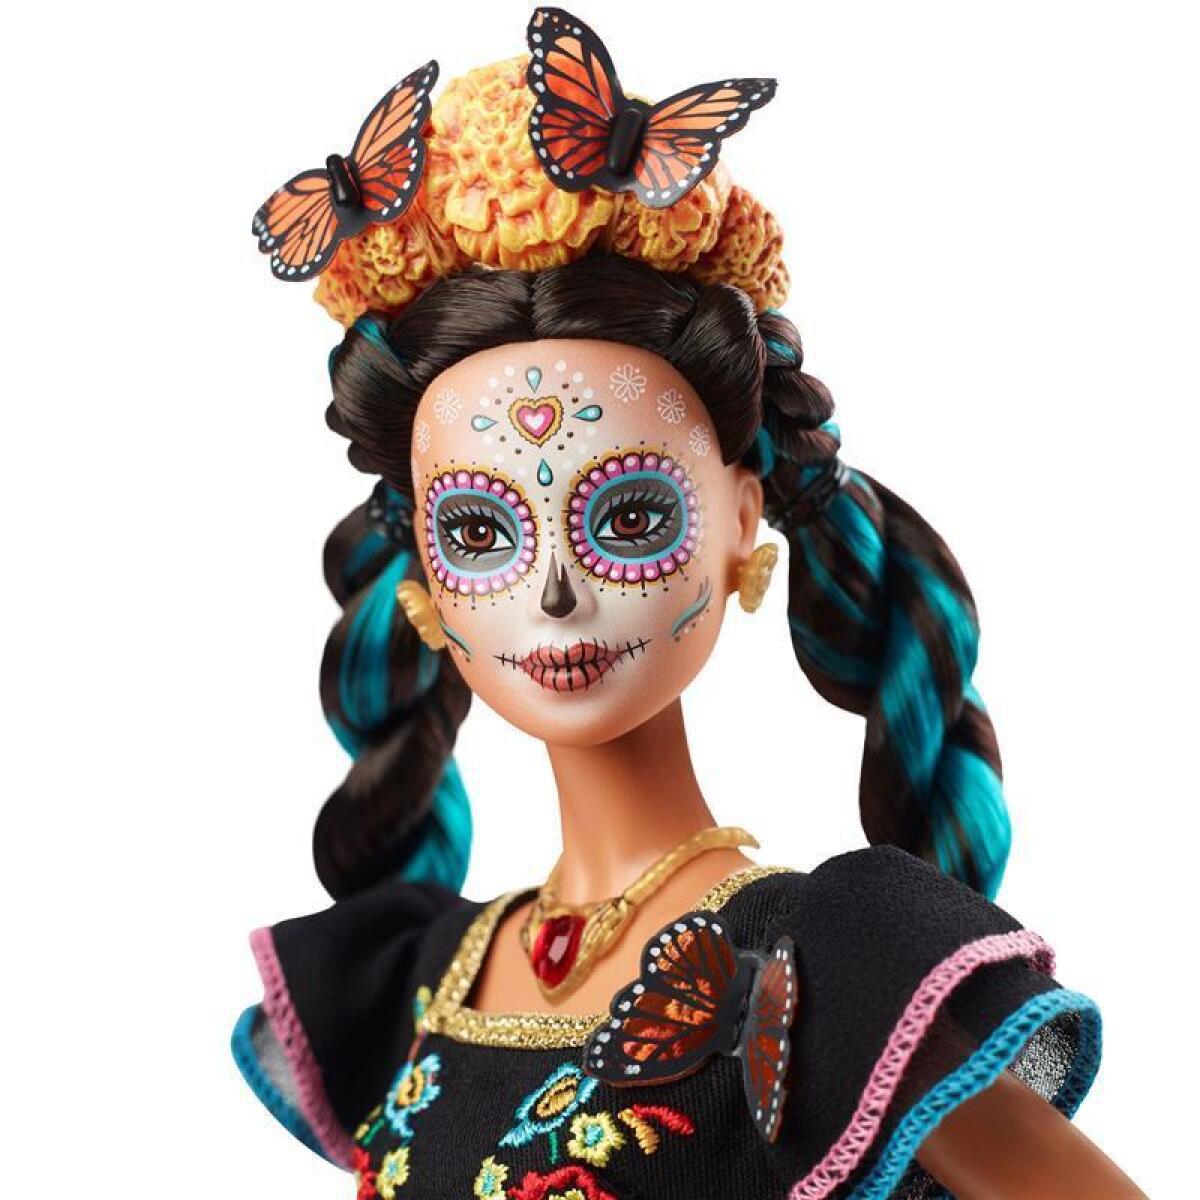 Fotografía cedida este martes por la empresa Mattel que anunció el lanzamiento de una nueva versión de su famosa muñeca Barbie que conmemorará el Día de Muertos para rendir homenaje "a México, a su fiesta, a sus símbolos y a su gente". EFE/Paul Jordan/MATTEL/SOLO USO EDITORIAL /NO VENTAS